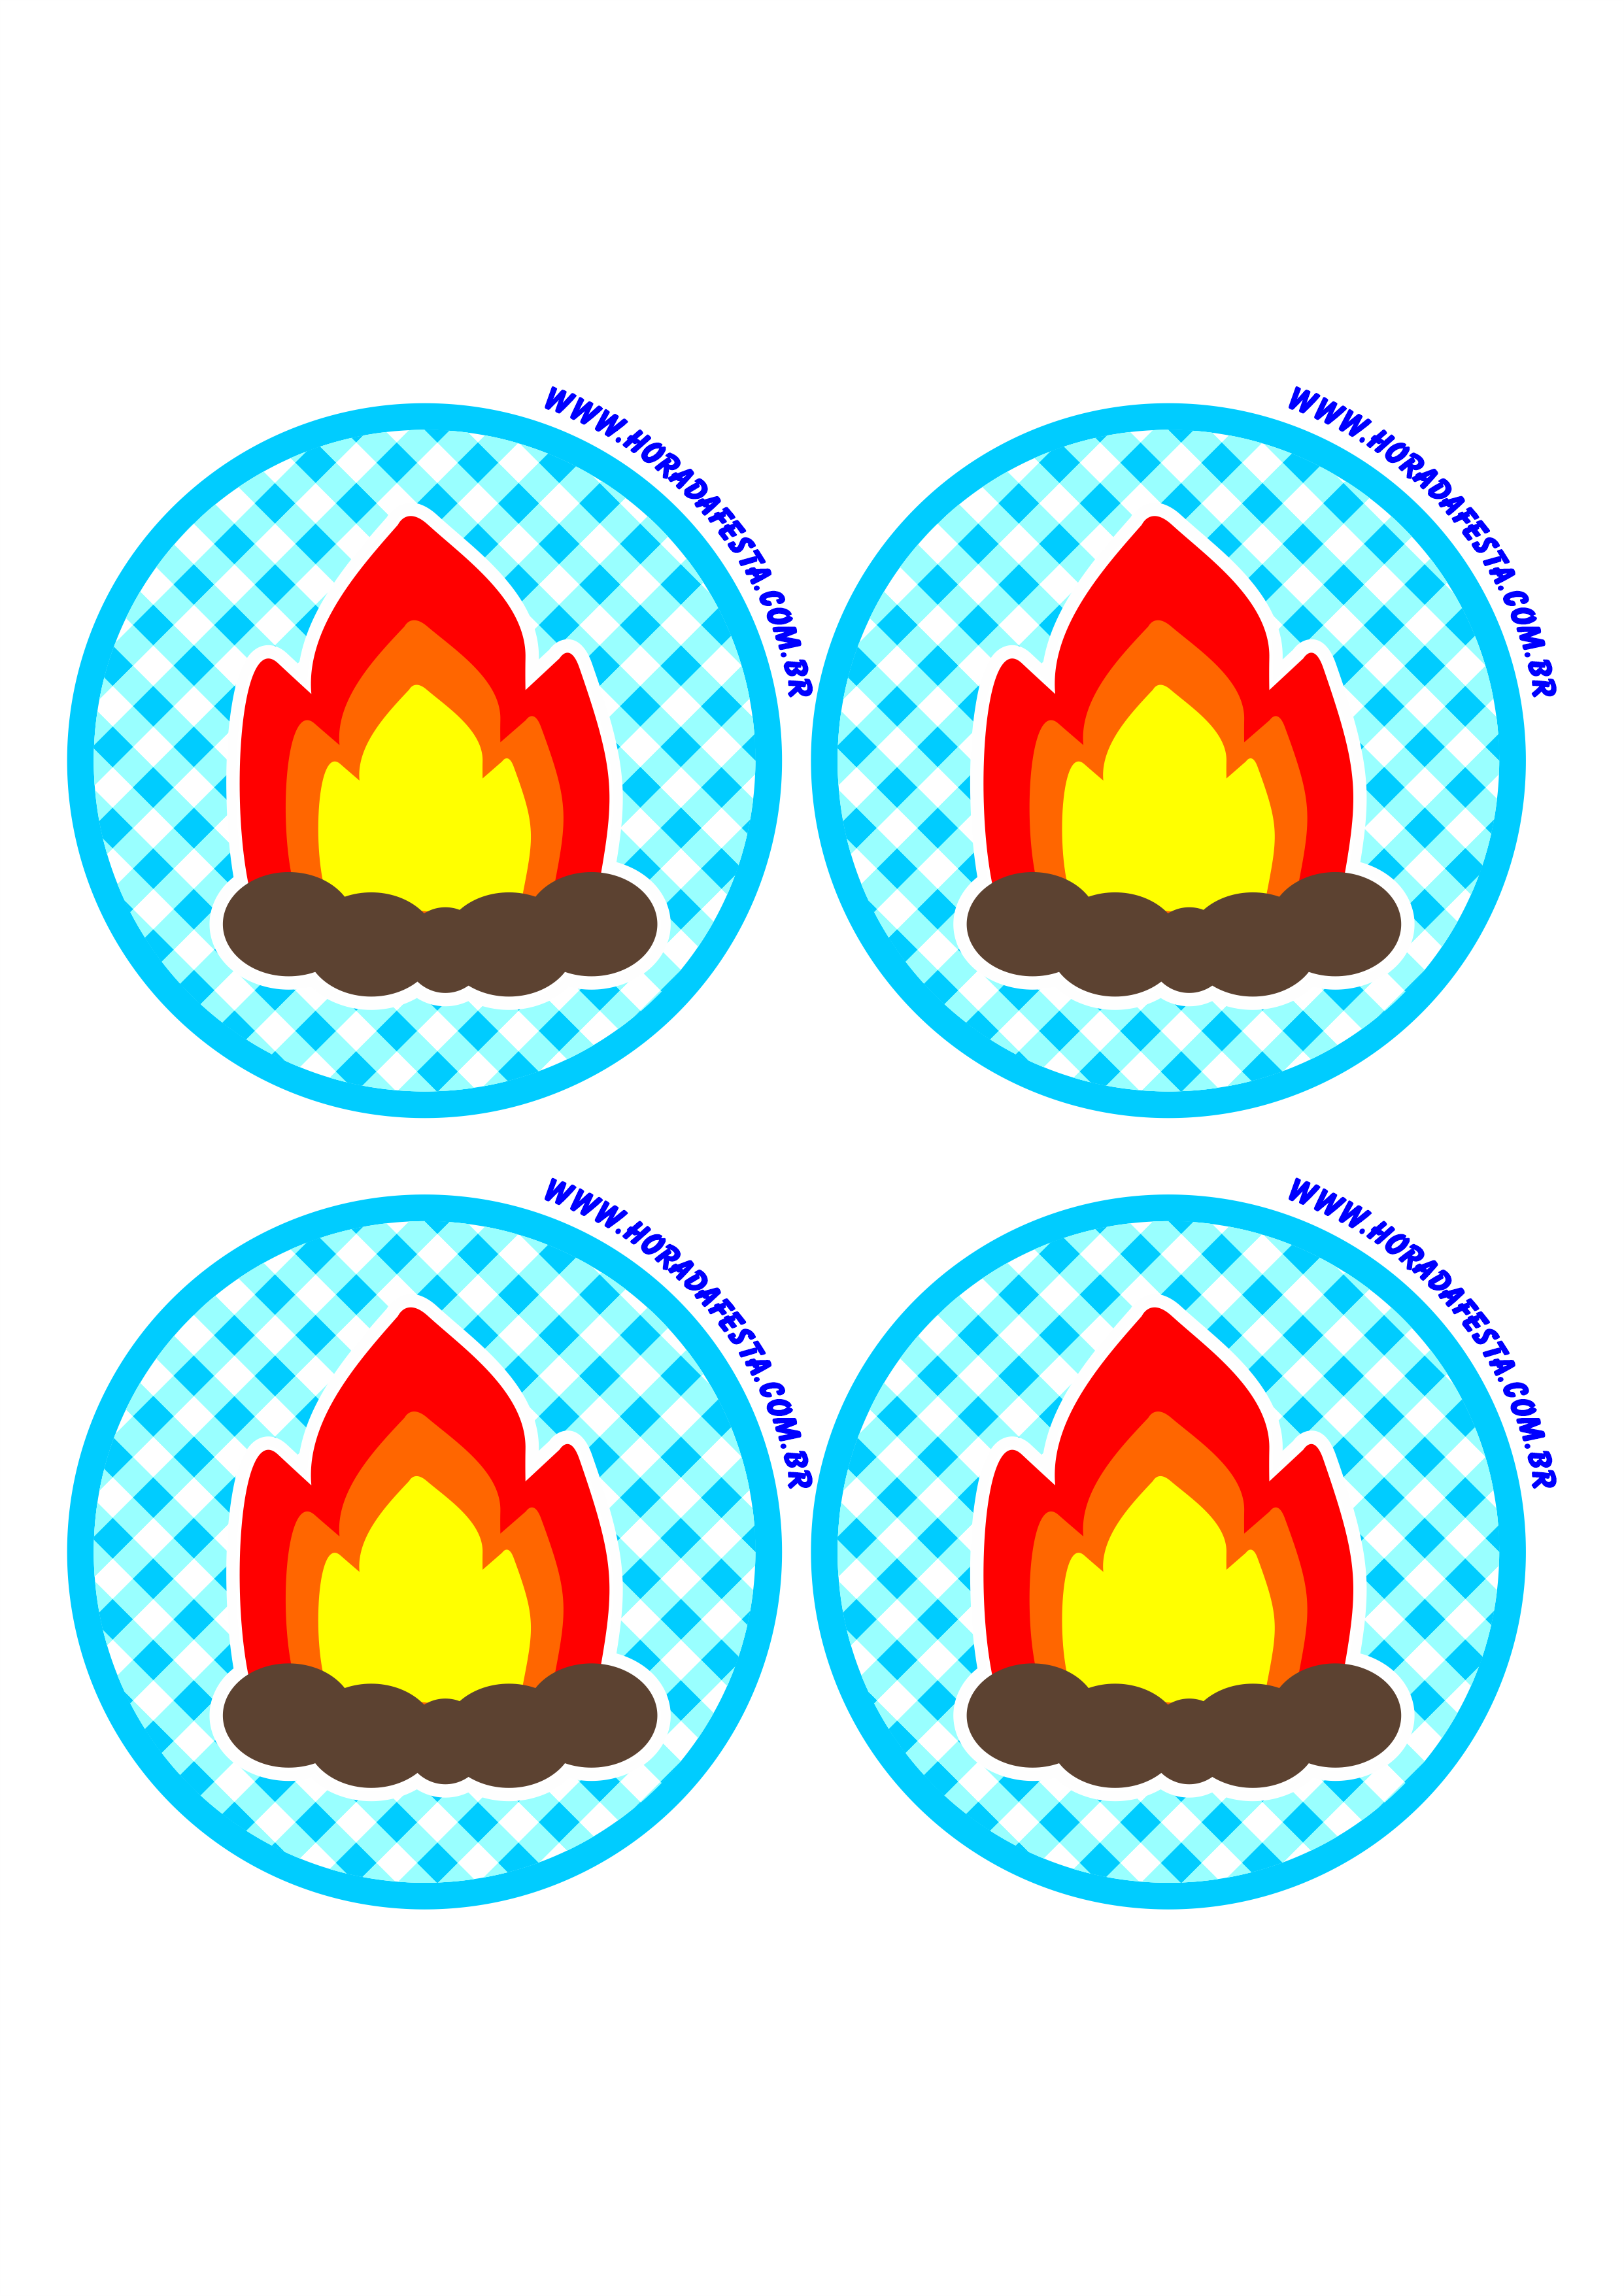 Festa junina logo adesivo redondo tag sticker azul fogueira de são joão 4 imagens png